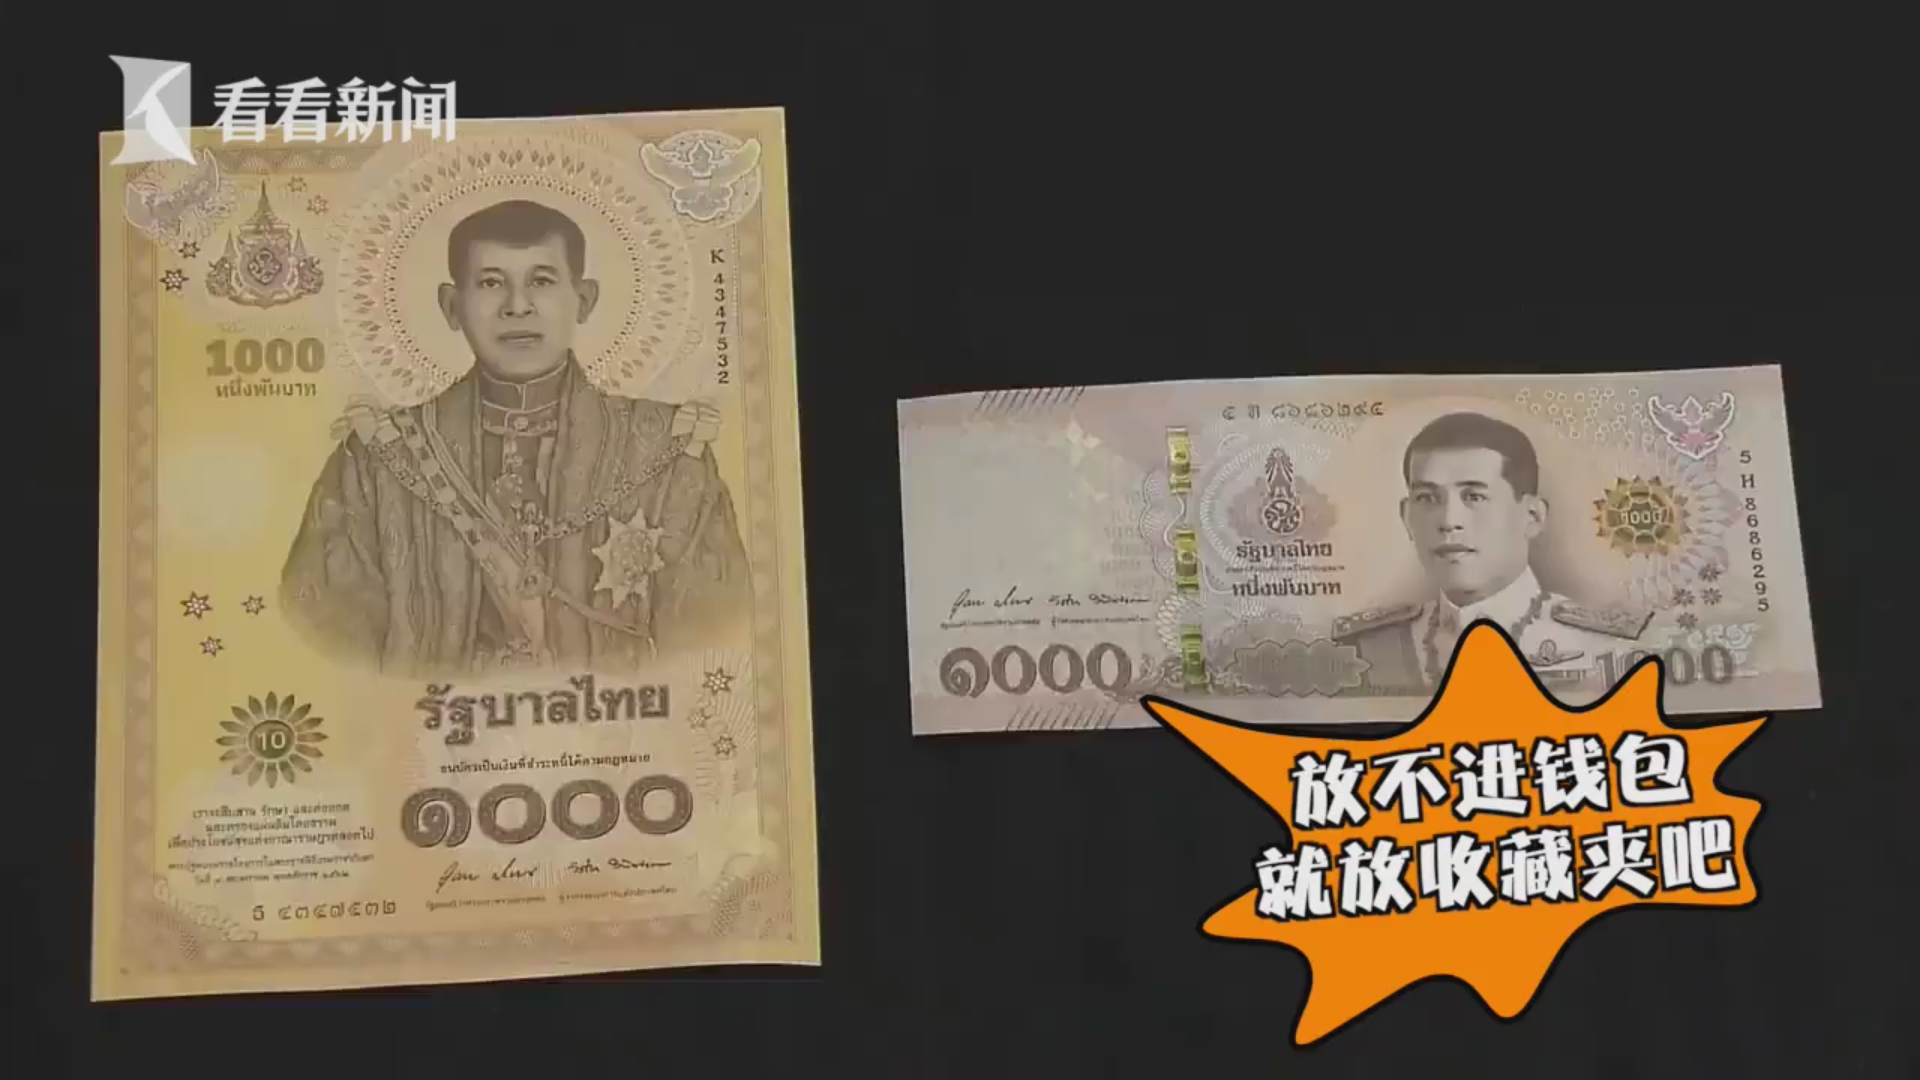 泰国发行巨型纸币遭吐槽:钱包没这么大不想收